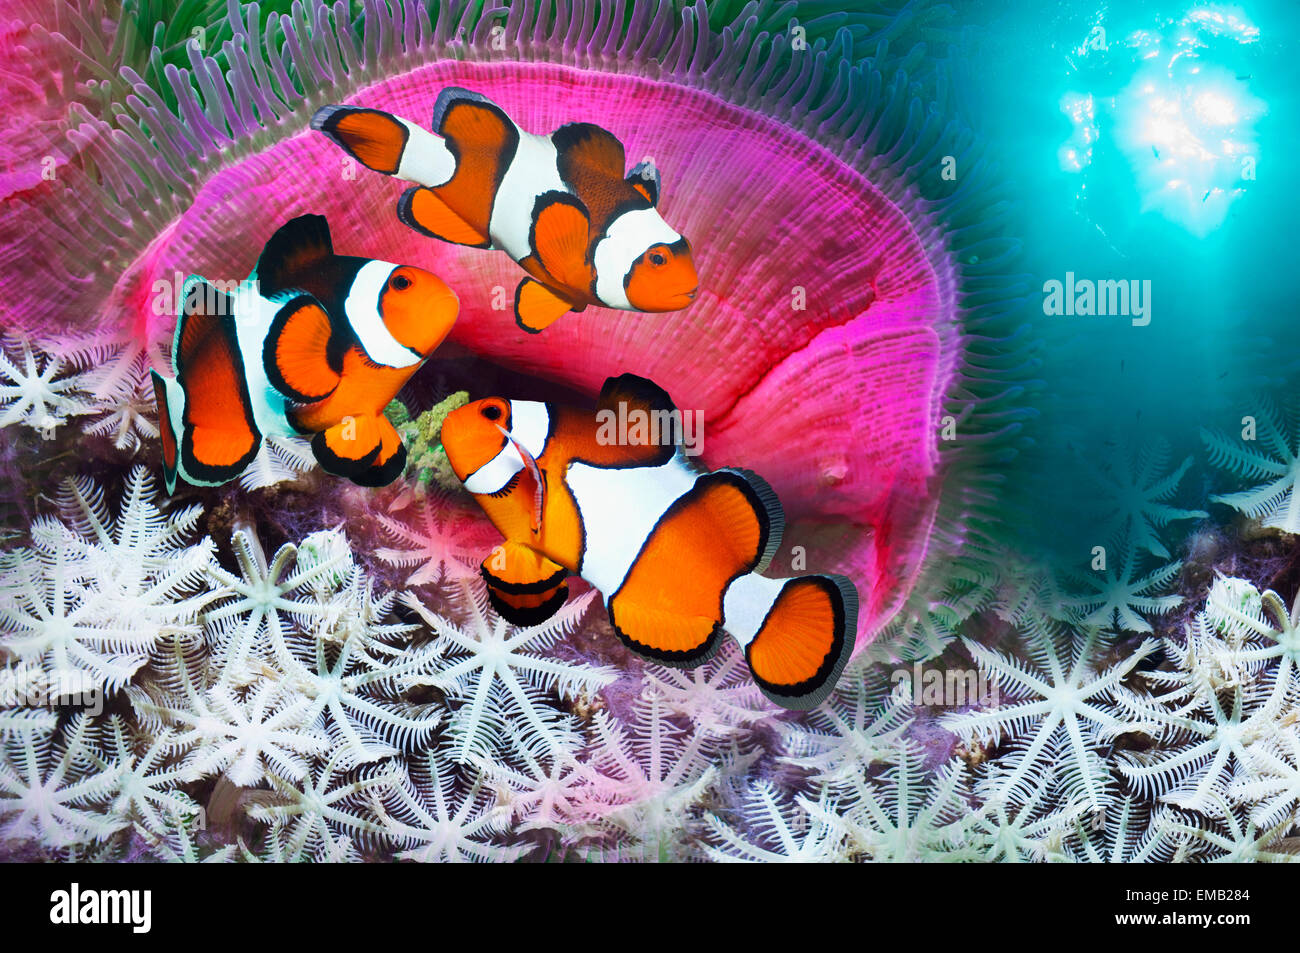 Montaggio del clown anemonefish con magnifica anemone marittimo Foto Stock